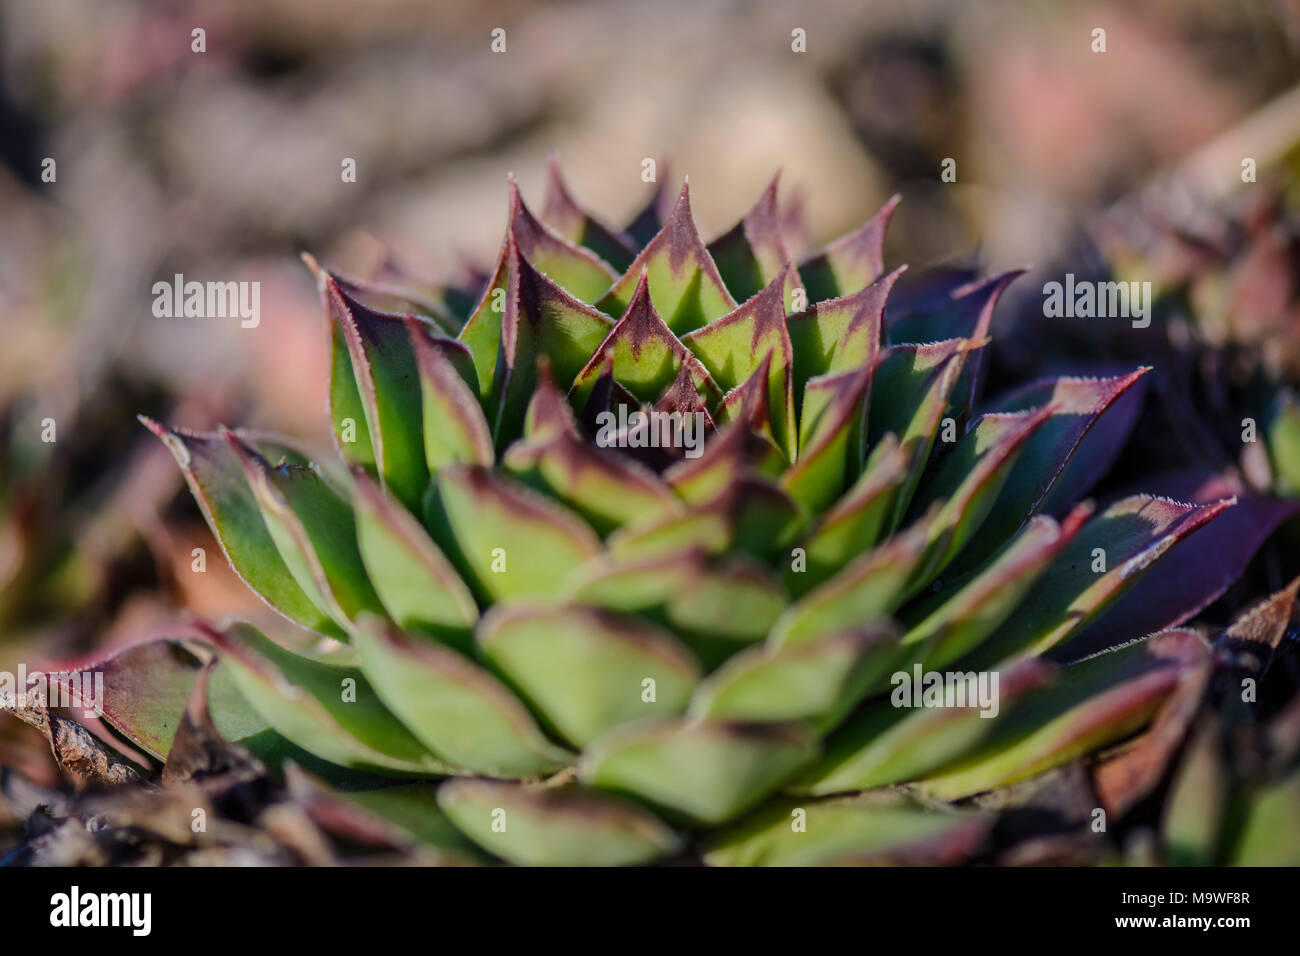 succulent plant Sempervivum against a blurry background Stock Photo